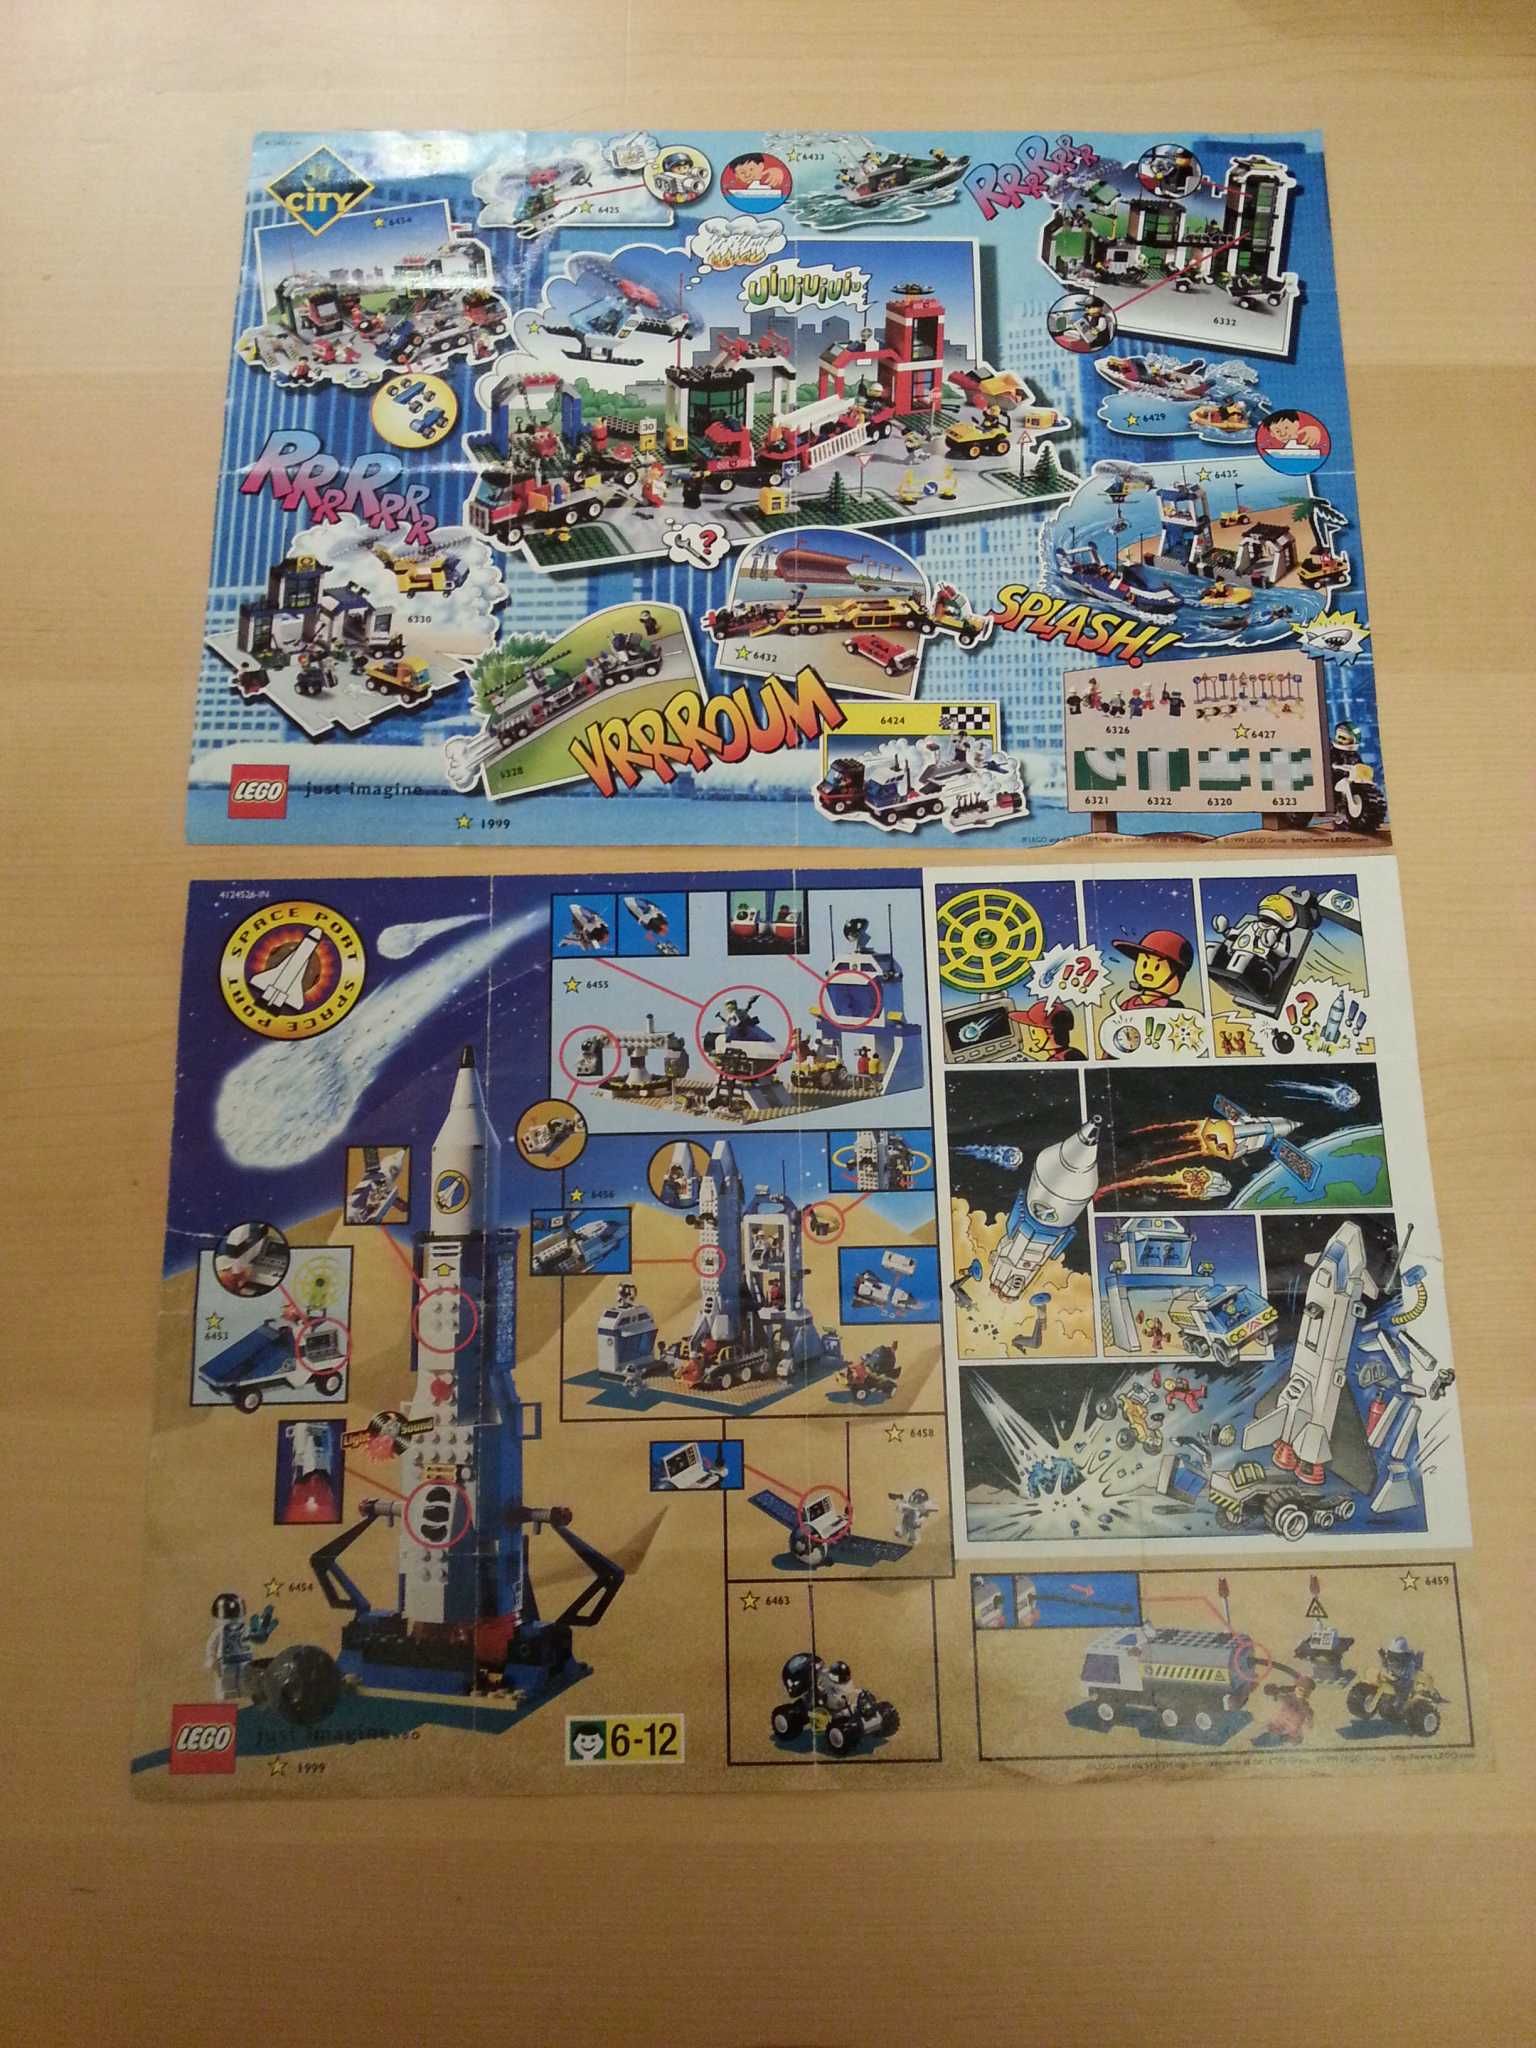 LEGO_mini katalog_plakat_10 sztuk